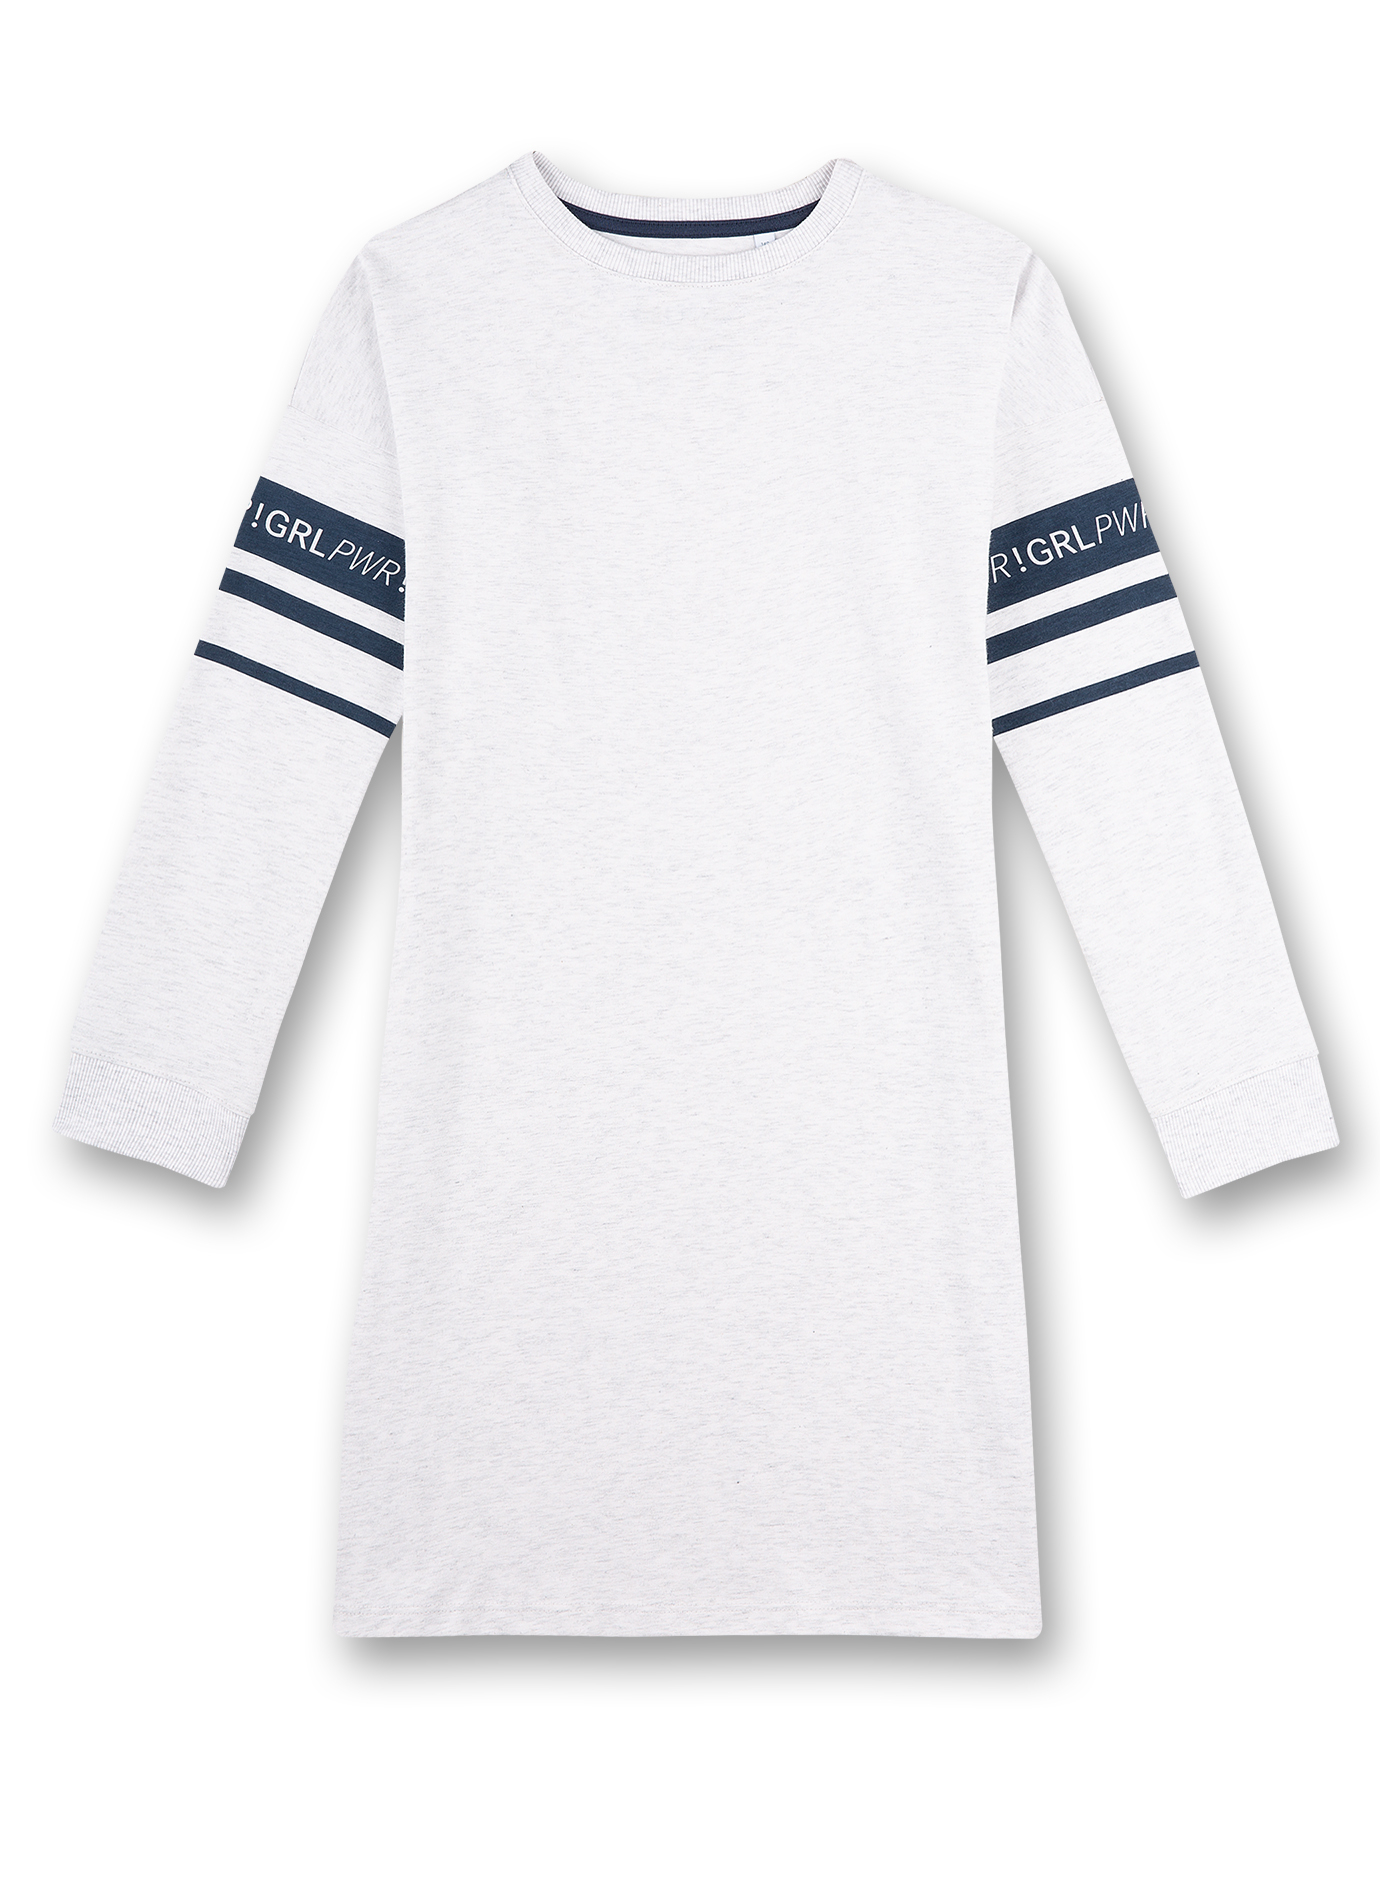 Mädchen-Nachthemd Langarm Weiß Athleisure 